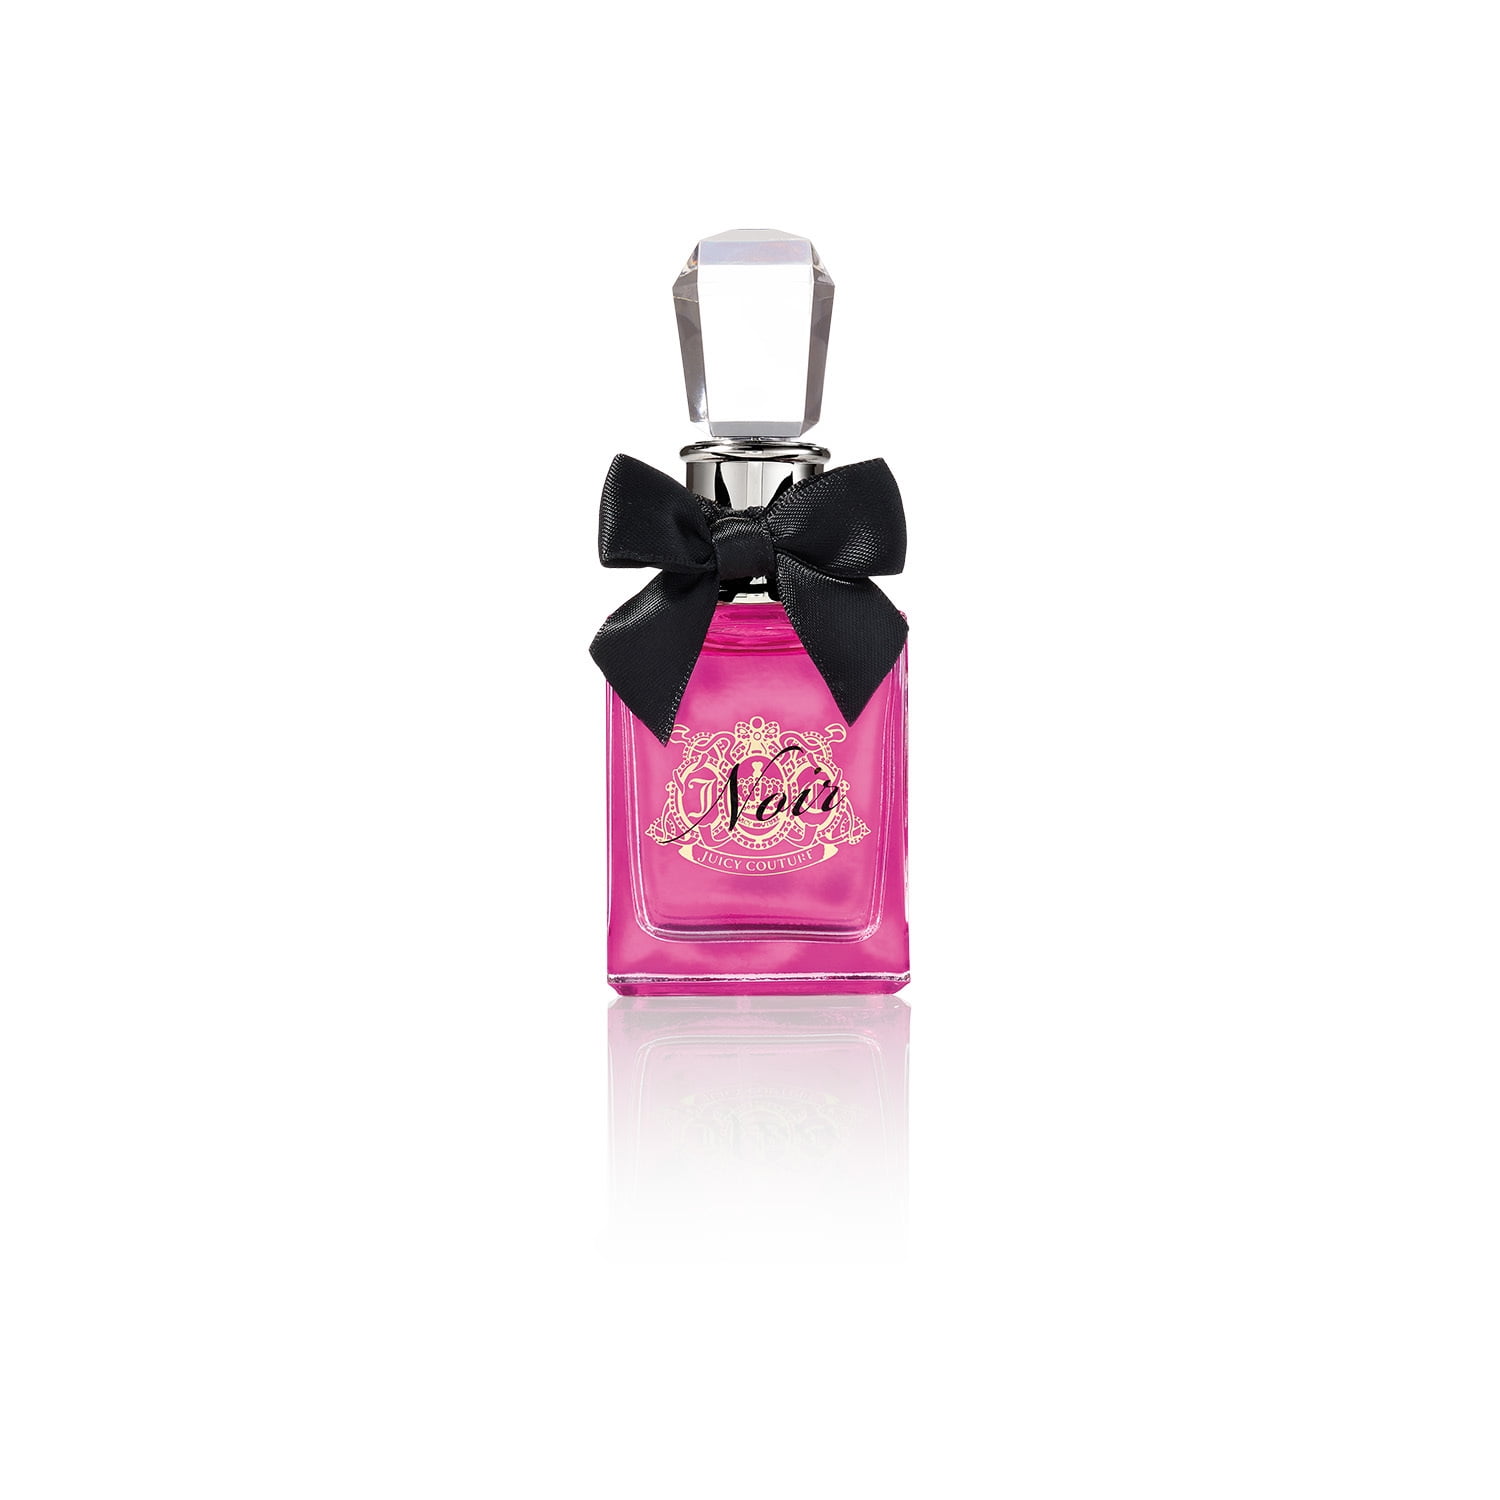 Juicy Couture Viva La Juicy Noir Eau de Parfum, Mother's Day Gift, Perfume for Women, 1.0 fl. oz